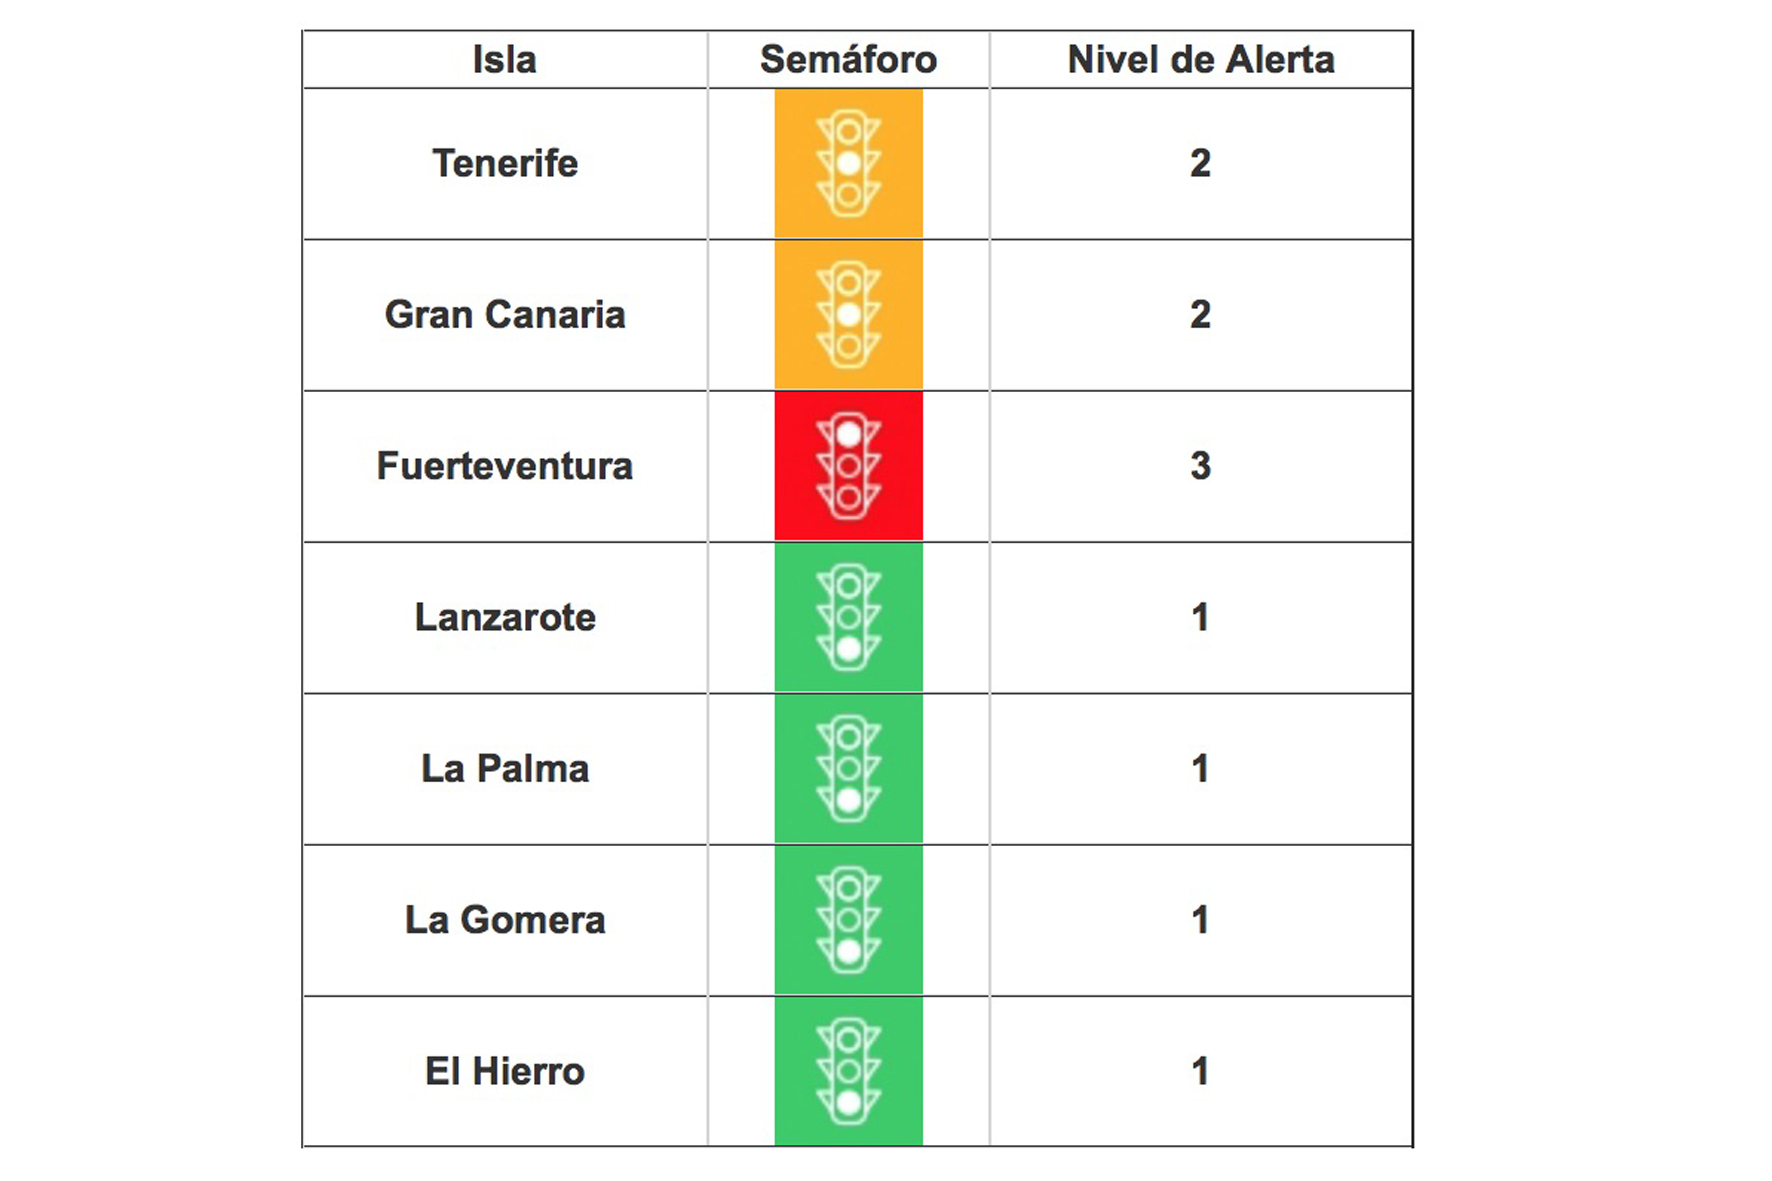 Tenerife baja de nivel tras la mejora de sus indicadores epidemiológicos, El Hierro se mantiene en el nivel 1